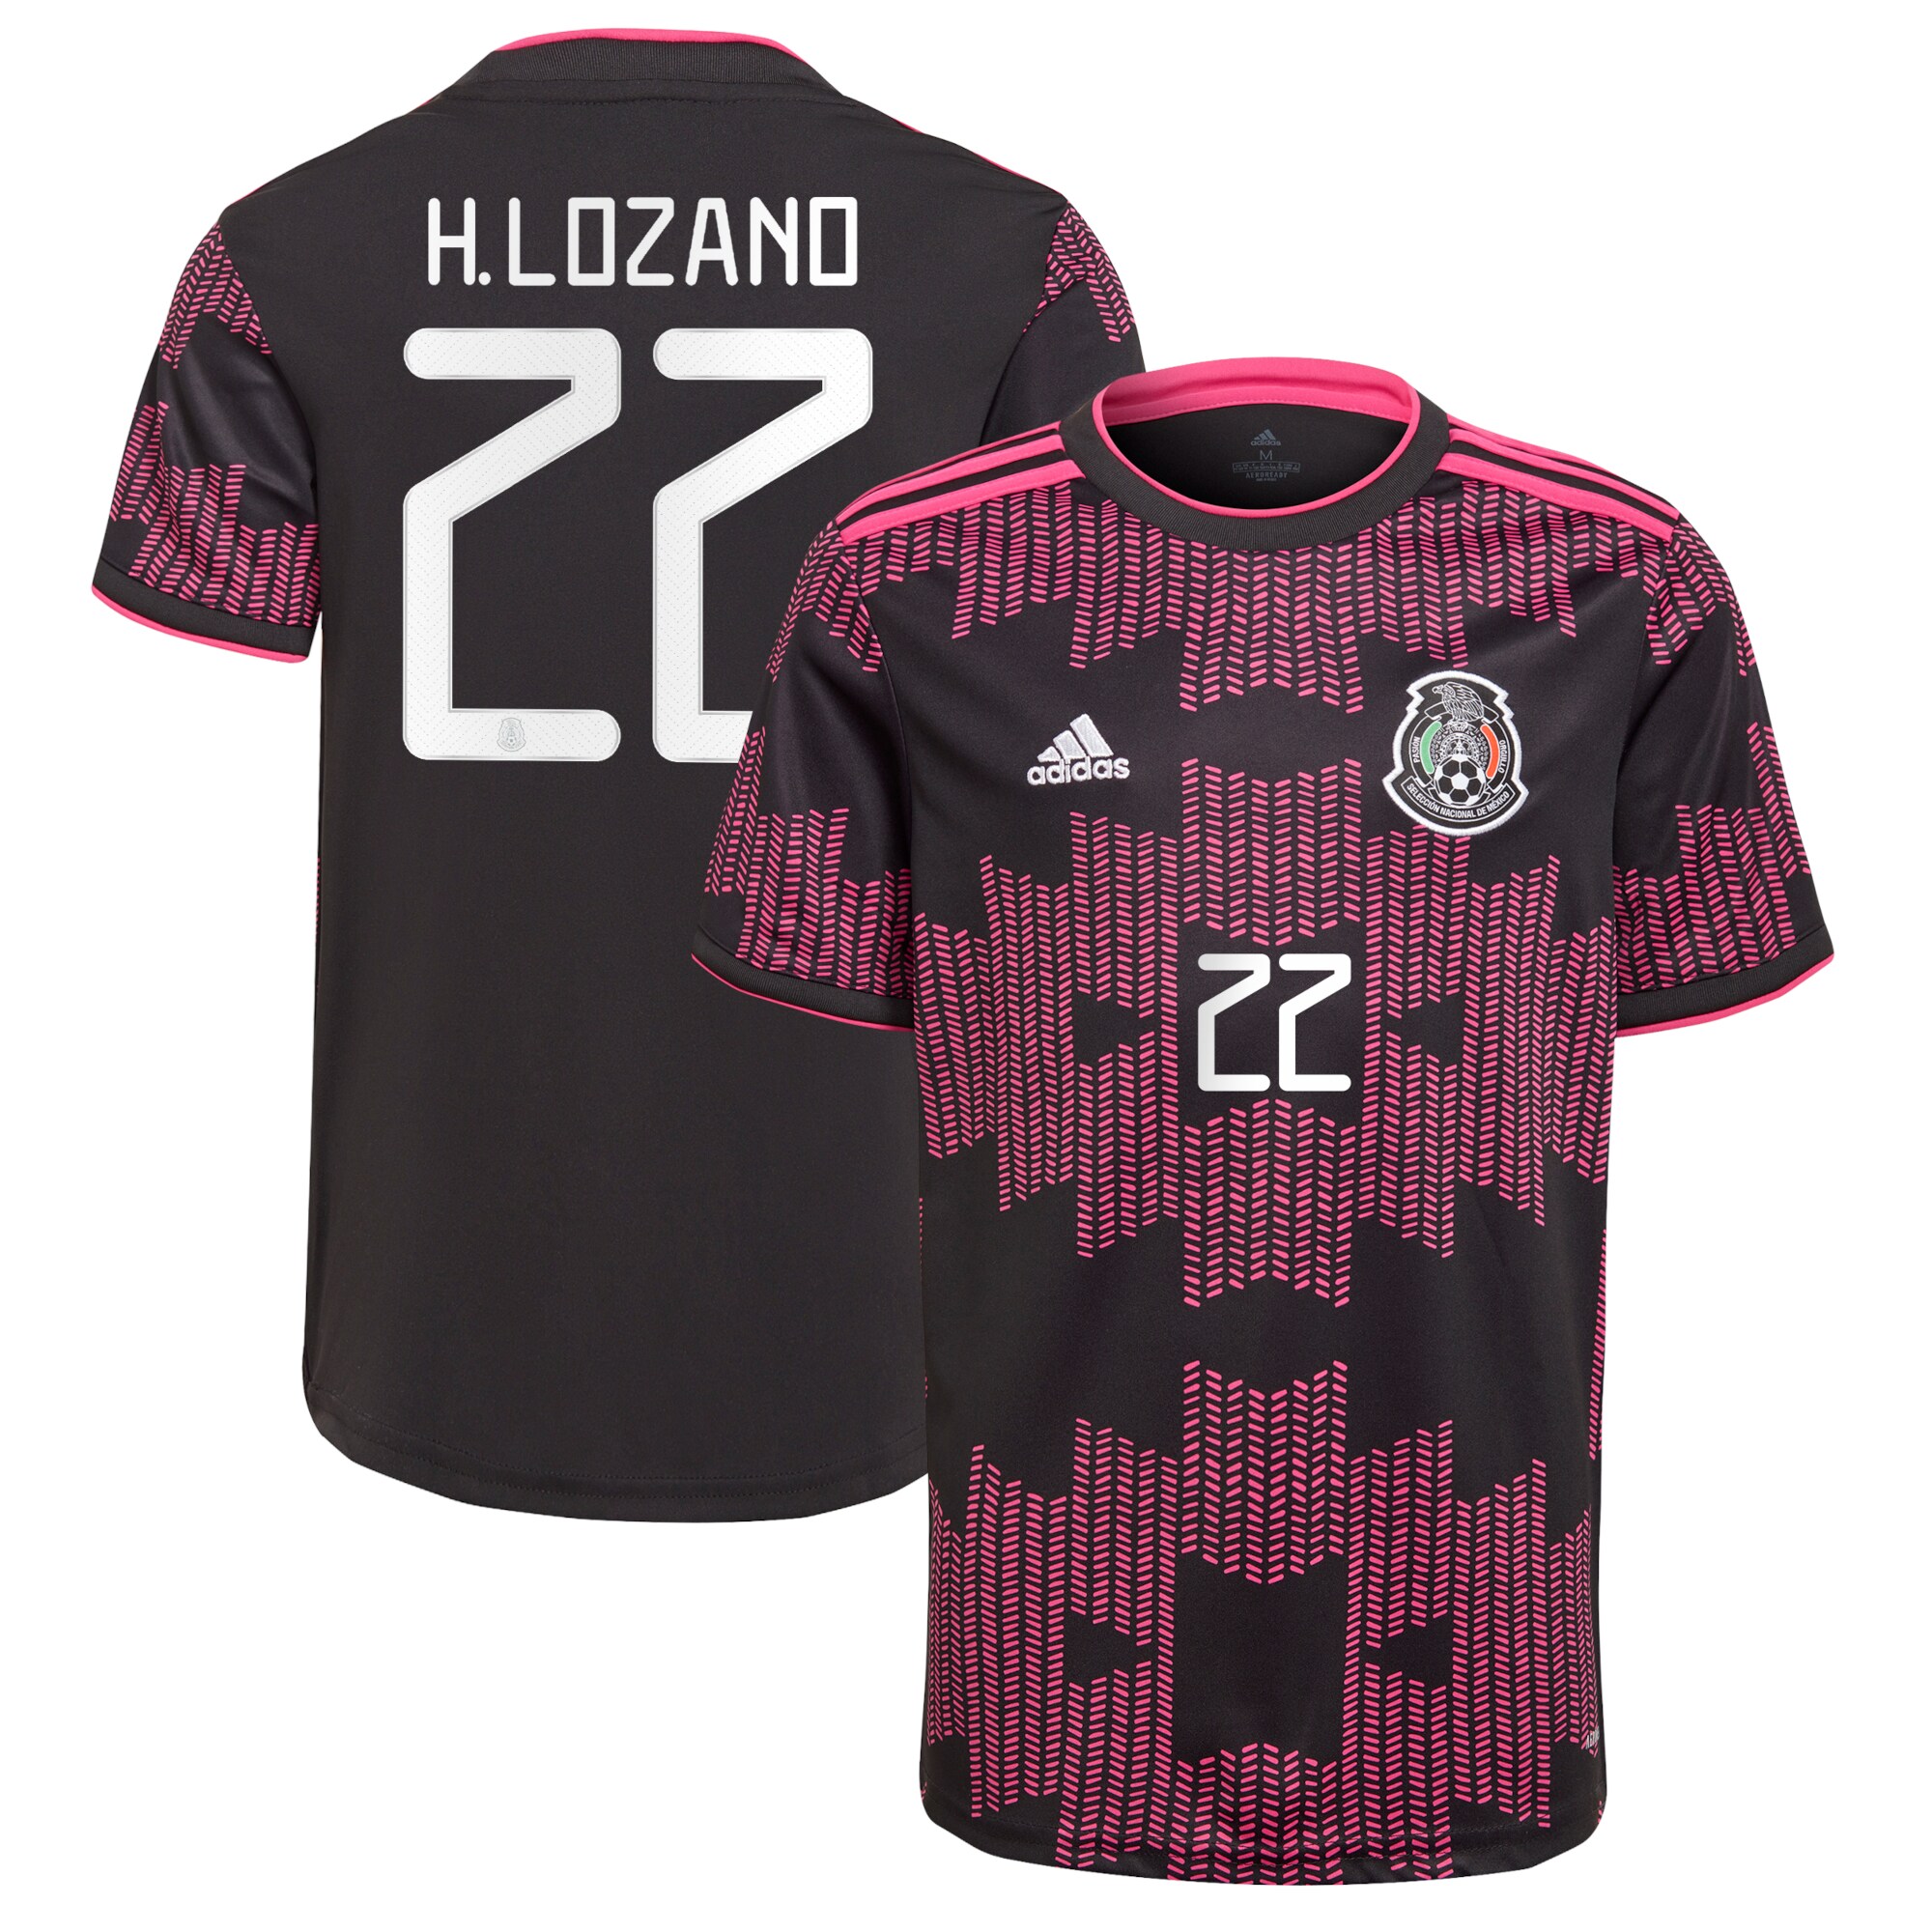 Hirving Lozano Mexico National Team 2021 Rosa Mexicano Jersey